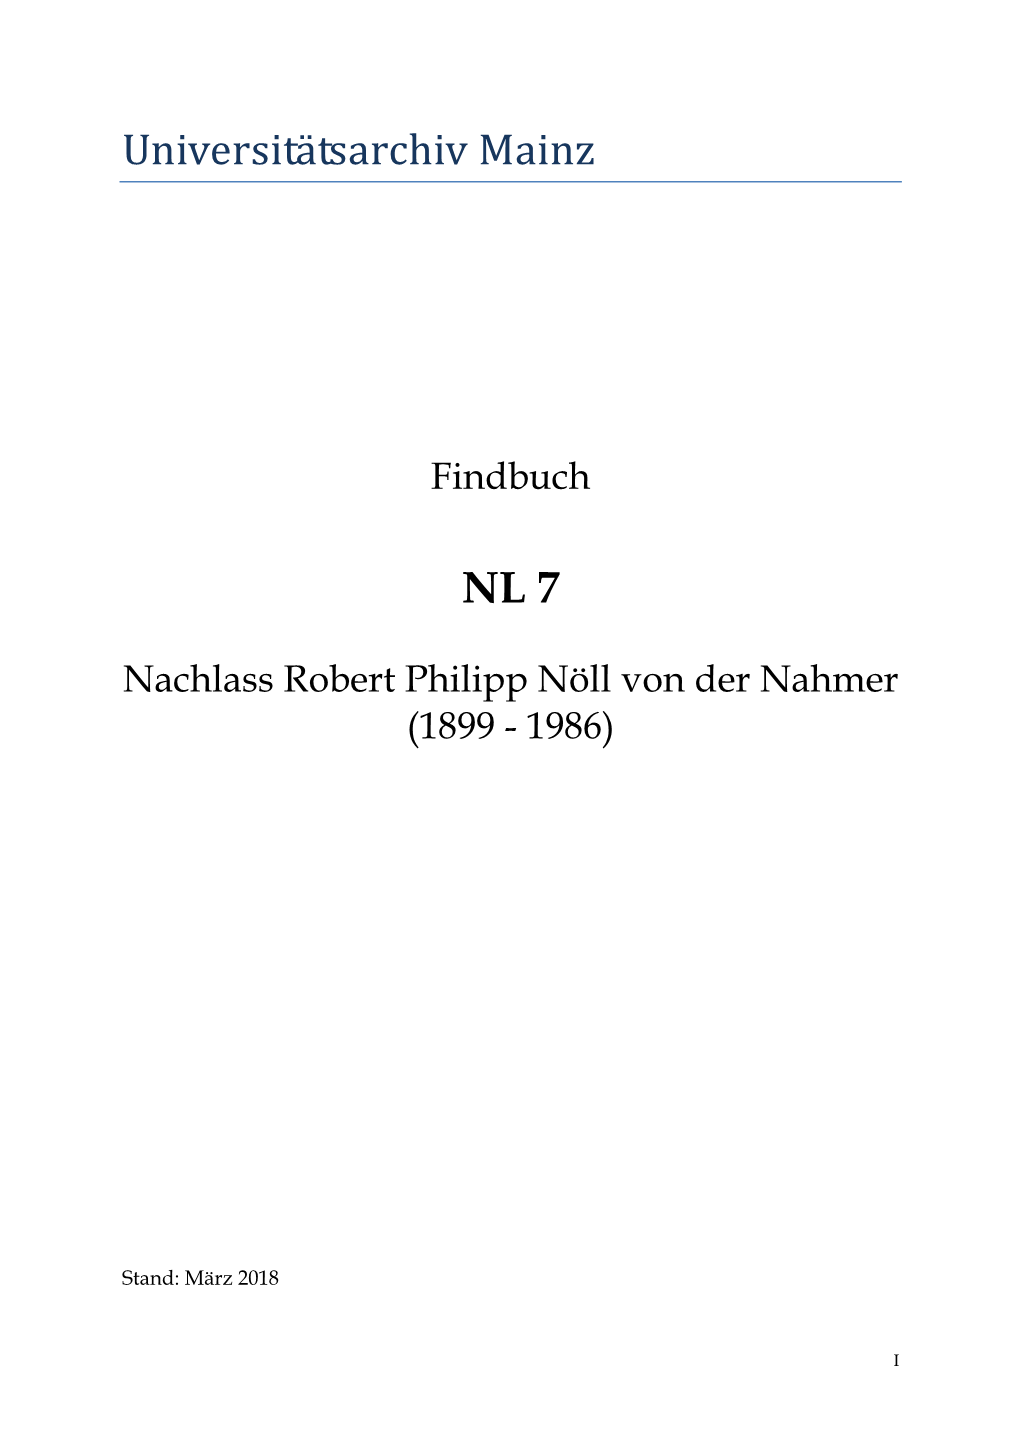 NL 07: Robert Nöll Von Der Nahmer, 1899-1986